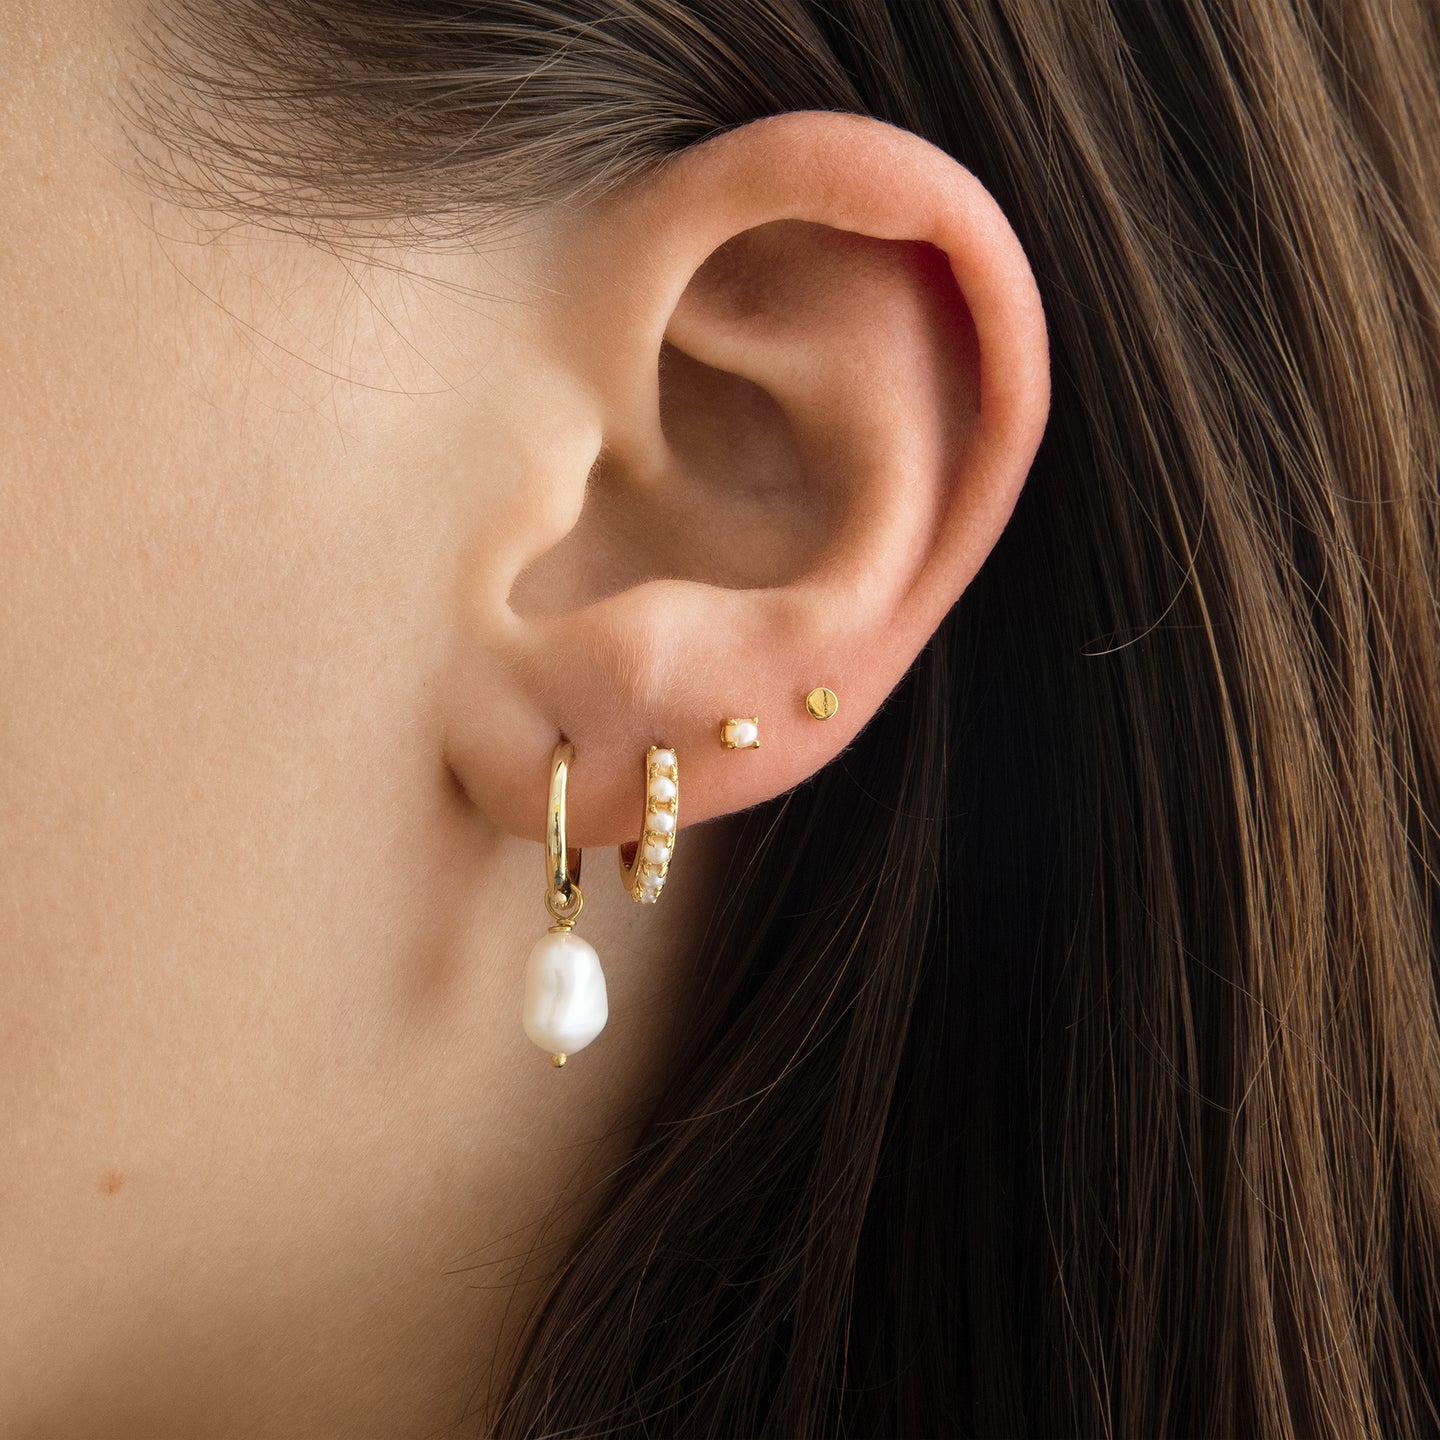 Pearl Earrings, Hoops, Dangles & Studs